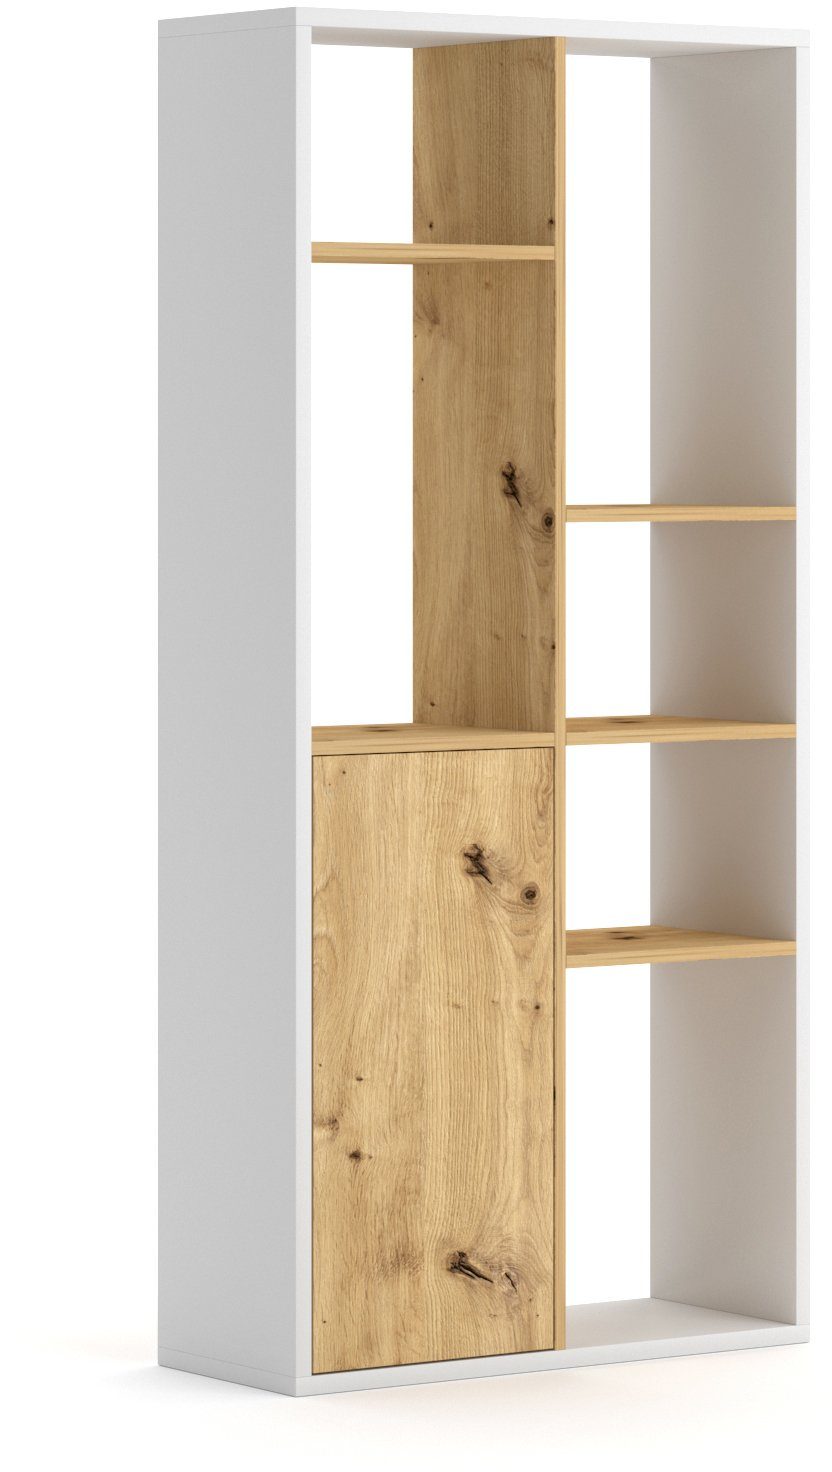 Matt Domando Artisan Breite Standregal stehend und Weiß Eiche 75cm, nutzbar, Pavia, Push-to-open-System liegend Bücherregal oder